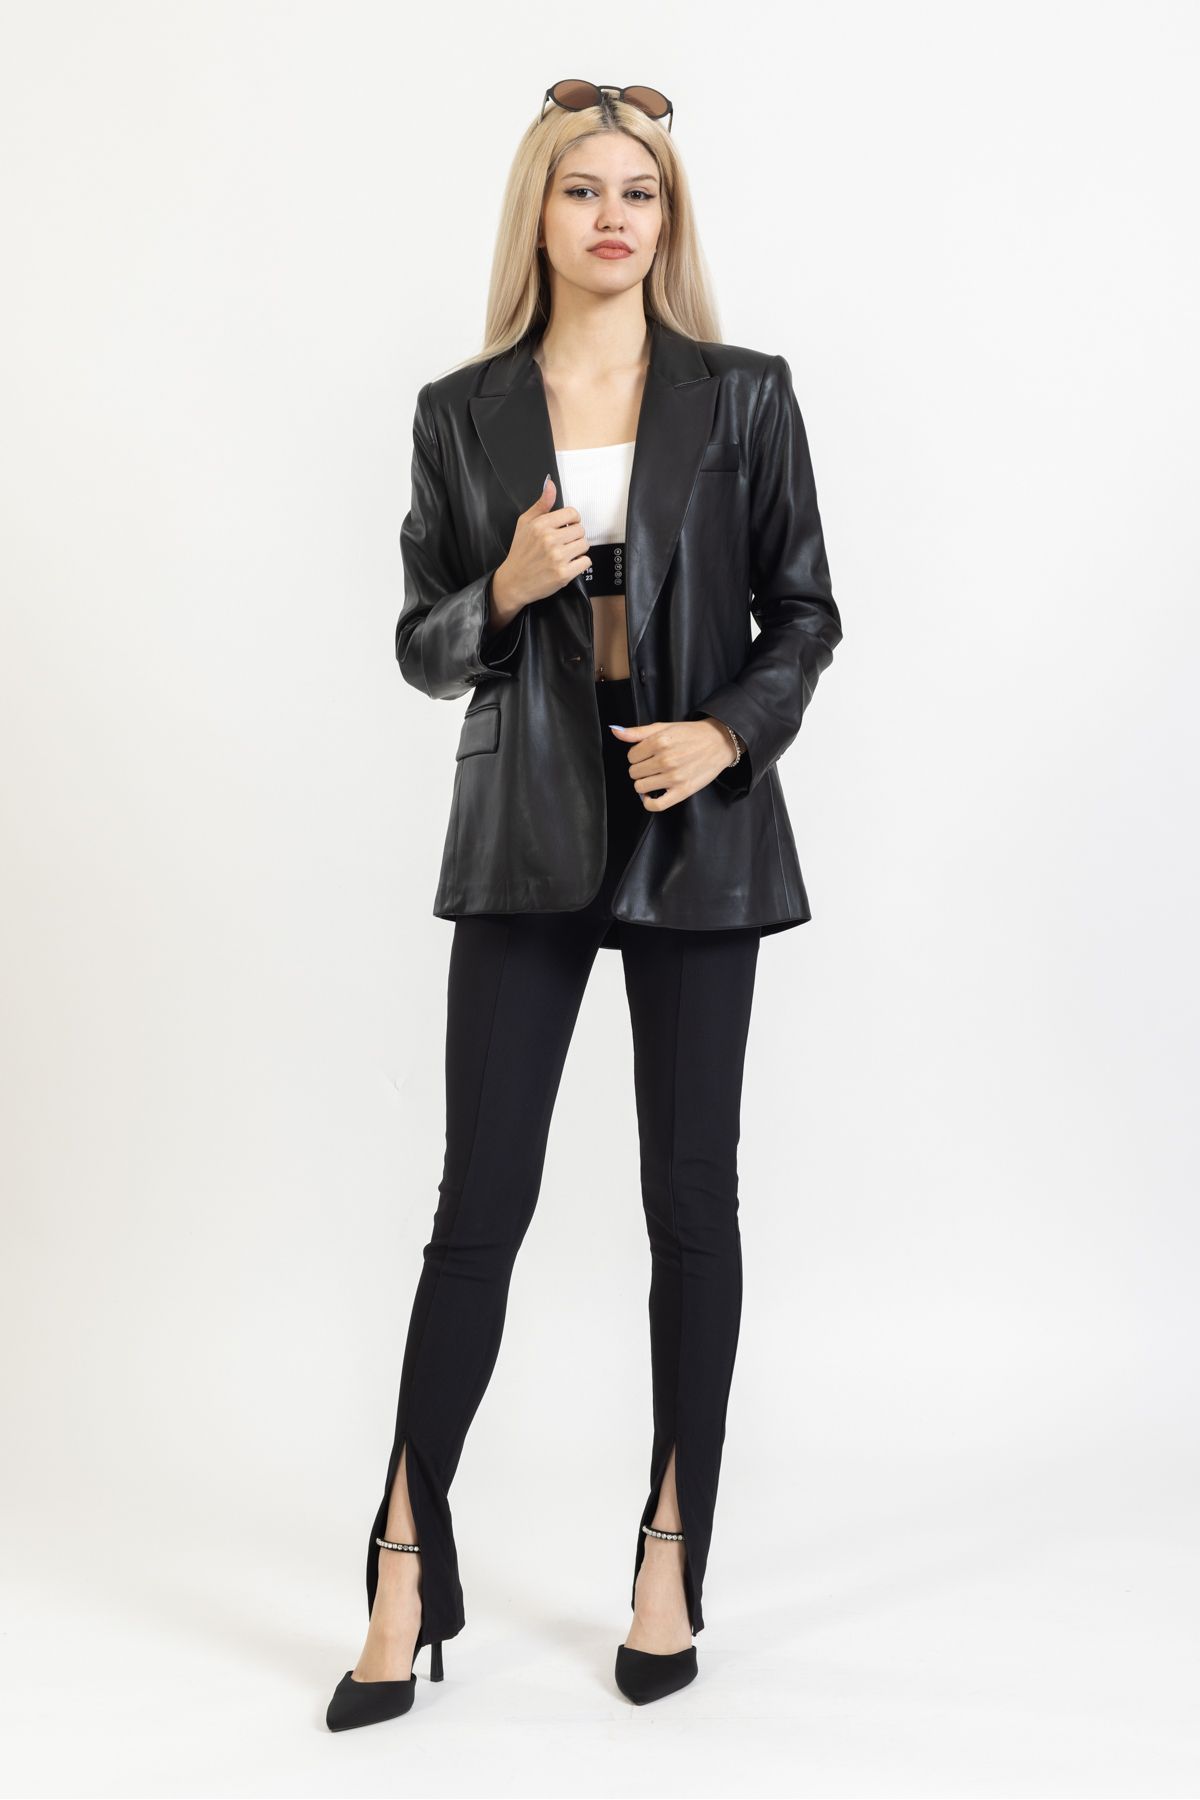 Dilvin Deri Ceket, Siyah Düğmeli Ceket, Astarlı Uzun Ceket, Ofis Giyim, Sokak Stili,6871